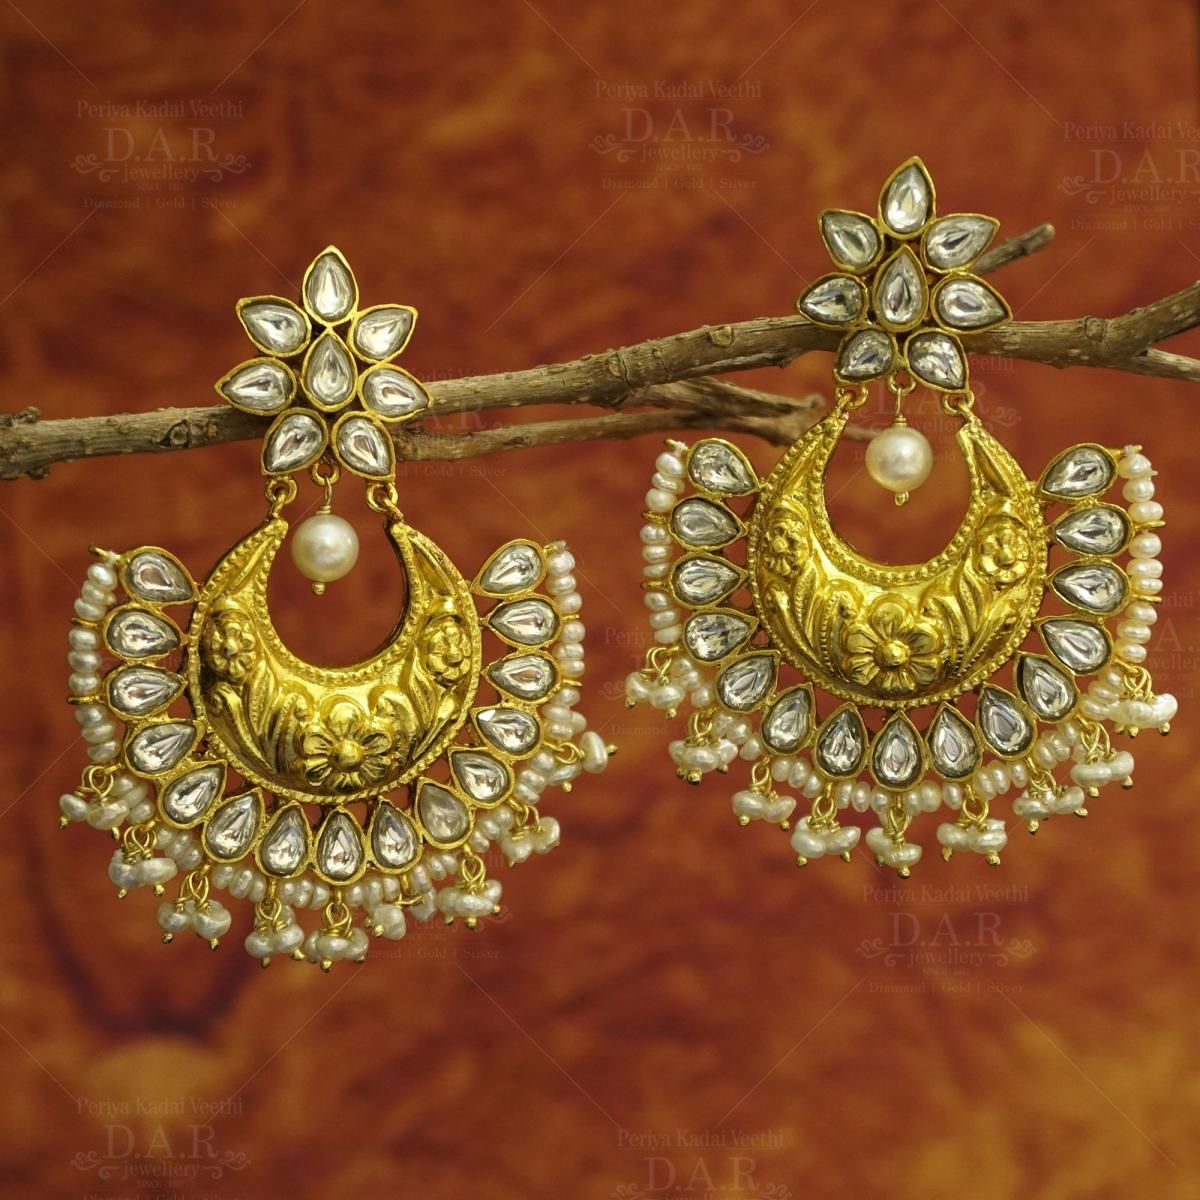 Buy Large Gold Jhumka Earrings Designs Bridal Gold Jhumka Earrings Ruby  Emerald and Pearl Large AD Jhumka American Diamond Drop Earrings Online in  India - Etsy